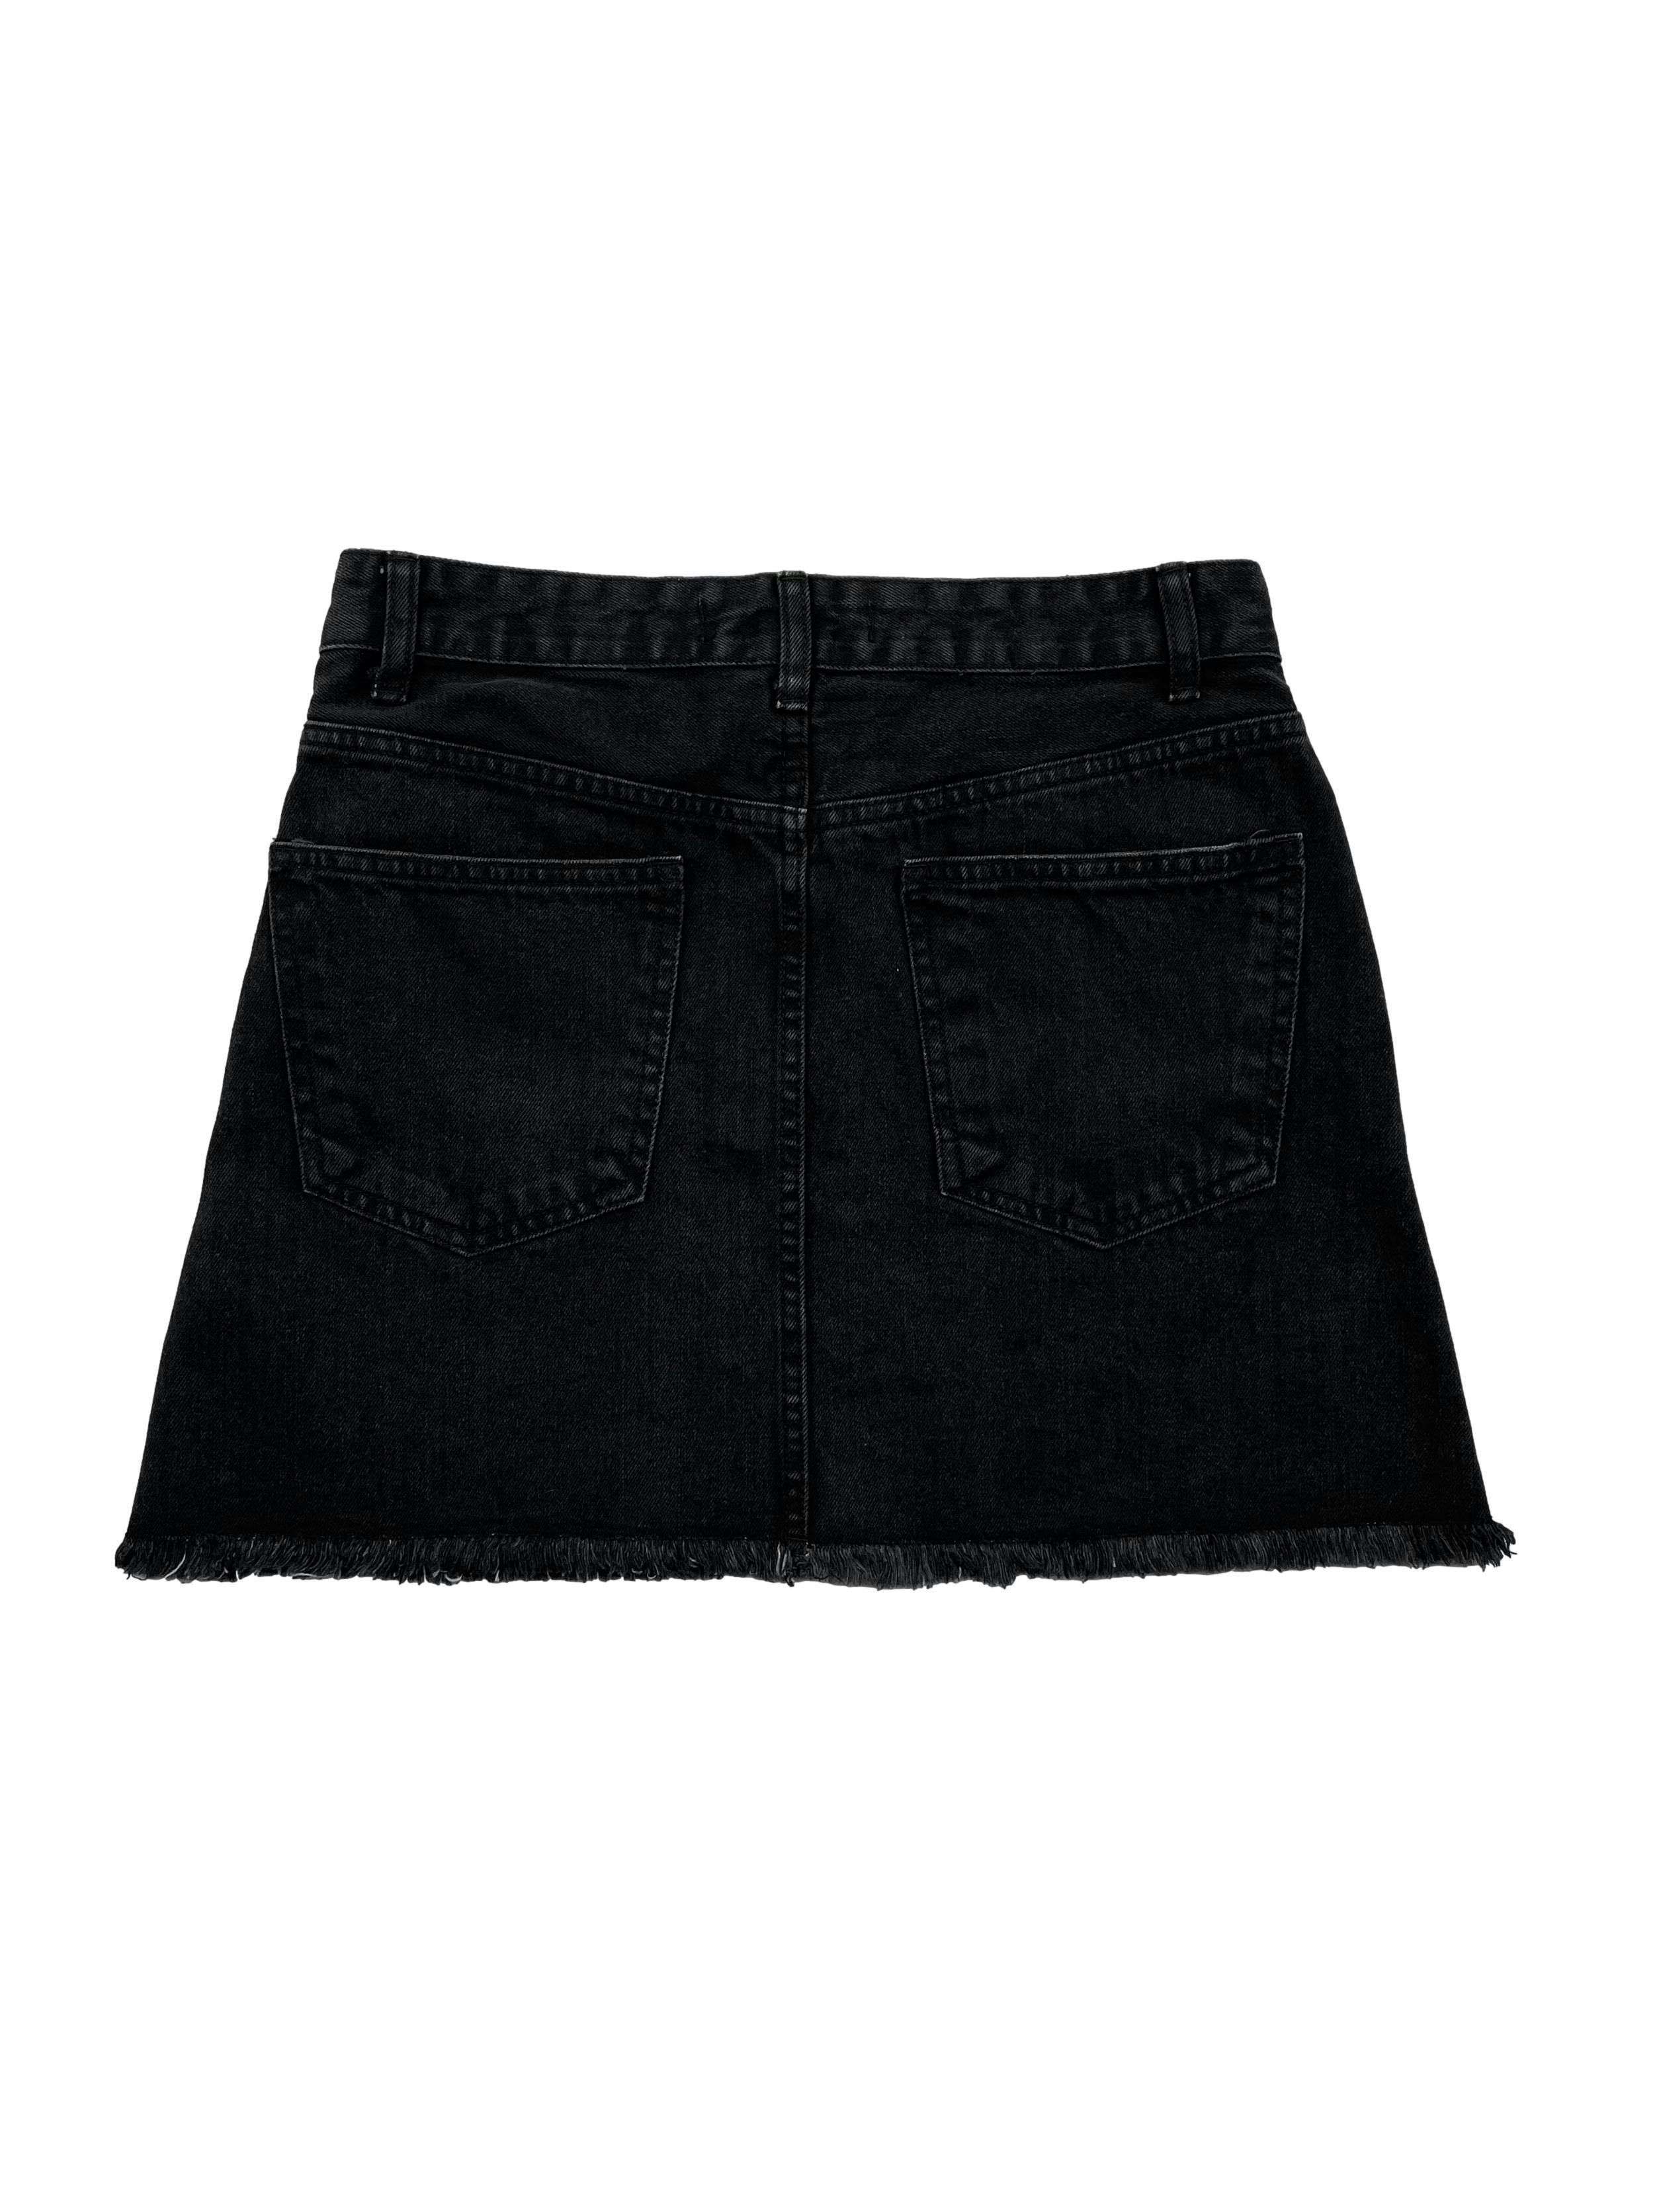 Falda jean Cherokee negra efecto lavado con basta desflecada. Cintura 72cm Largo 41cm